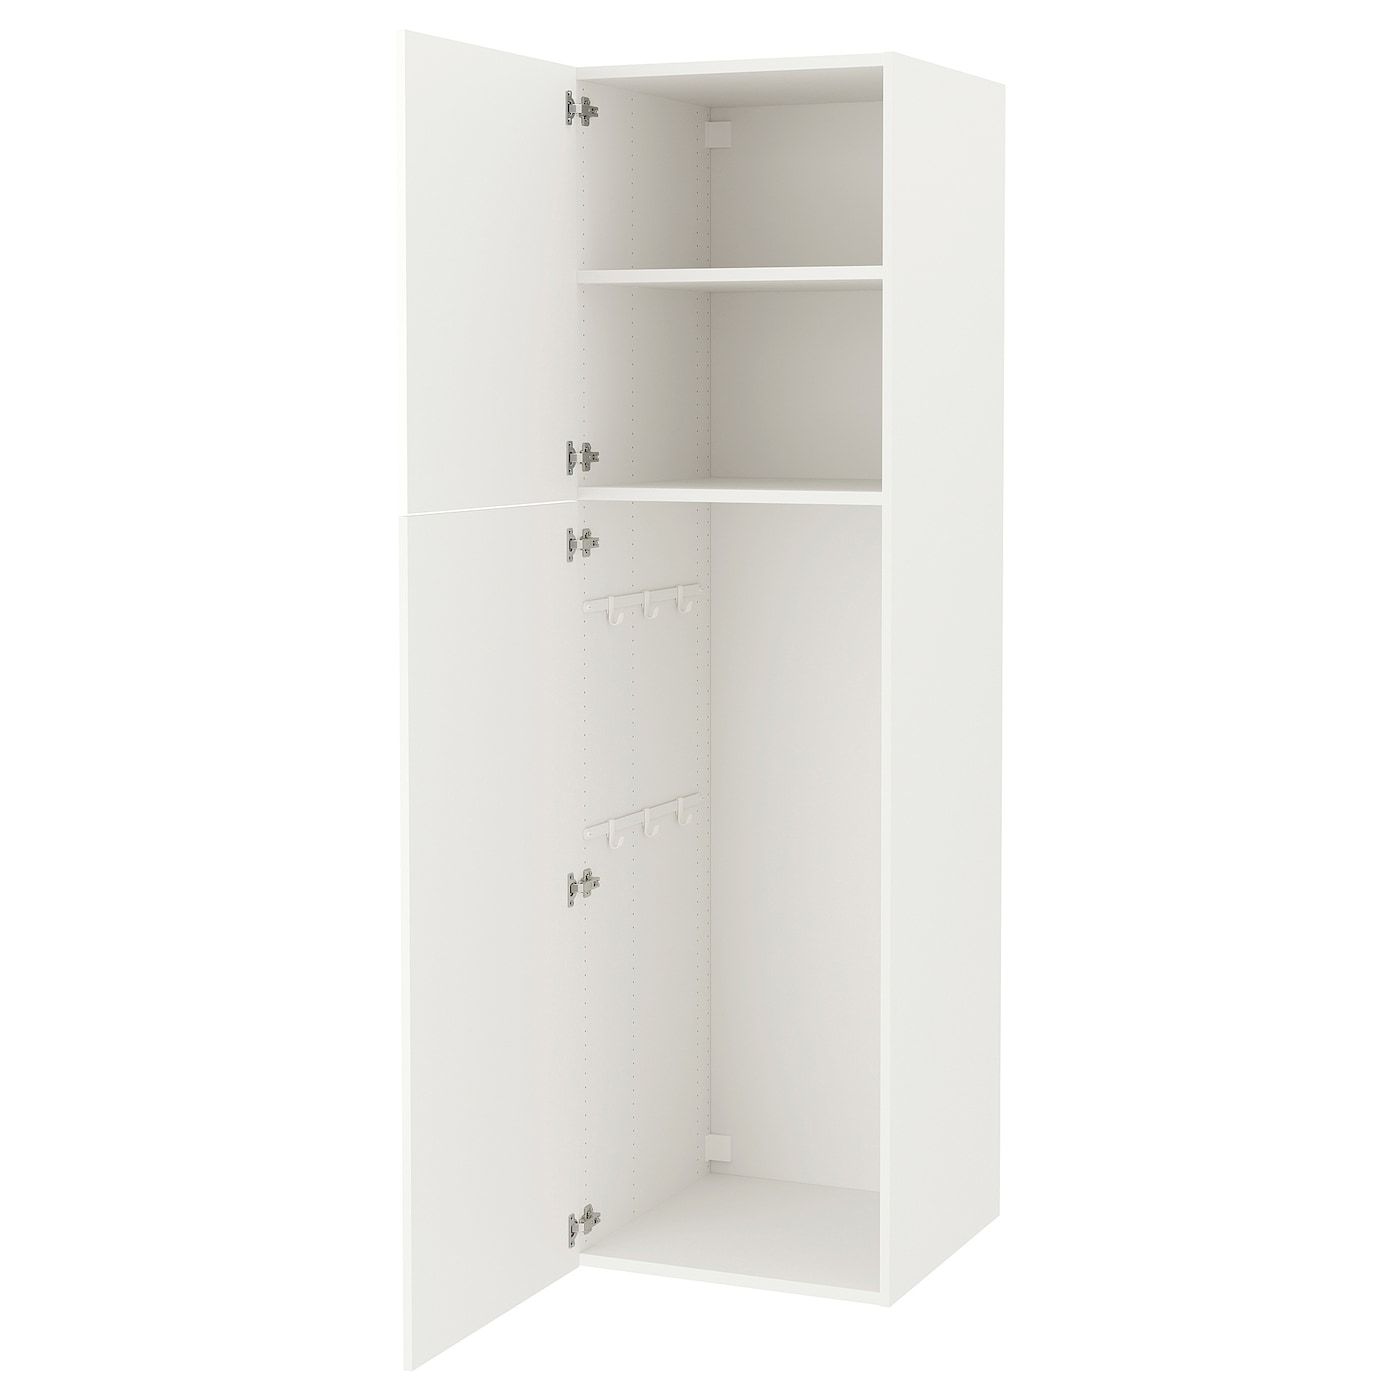 Высокая тумба для ванной - ENHET  IKEA/ЭНХЕТ ИКЕА, 60x62x210 см, белый